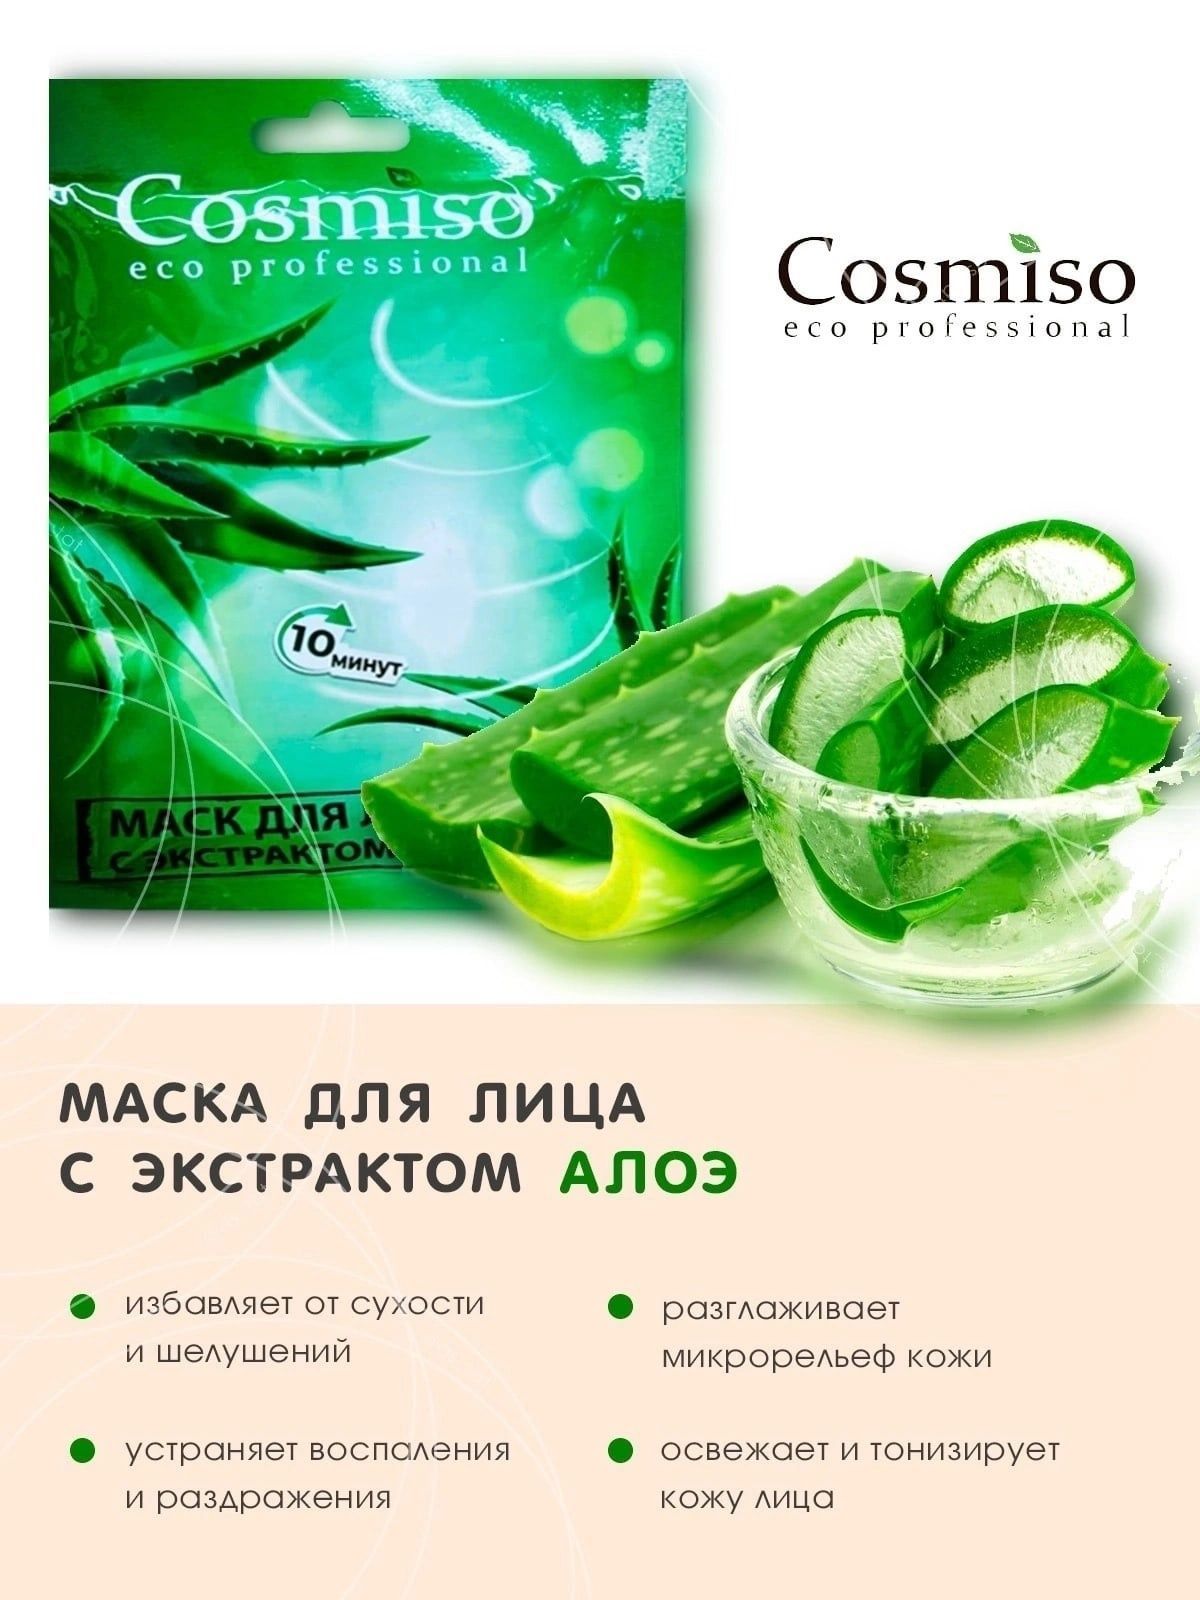 Cosmiso eco professional. Тканевые маски cosmiso. Cosmiso / набор тканевых масок для лица. Cosmiso Eco professional маска для лица. Cosmiso капсулы для лица.